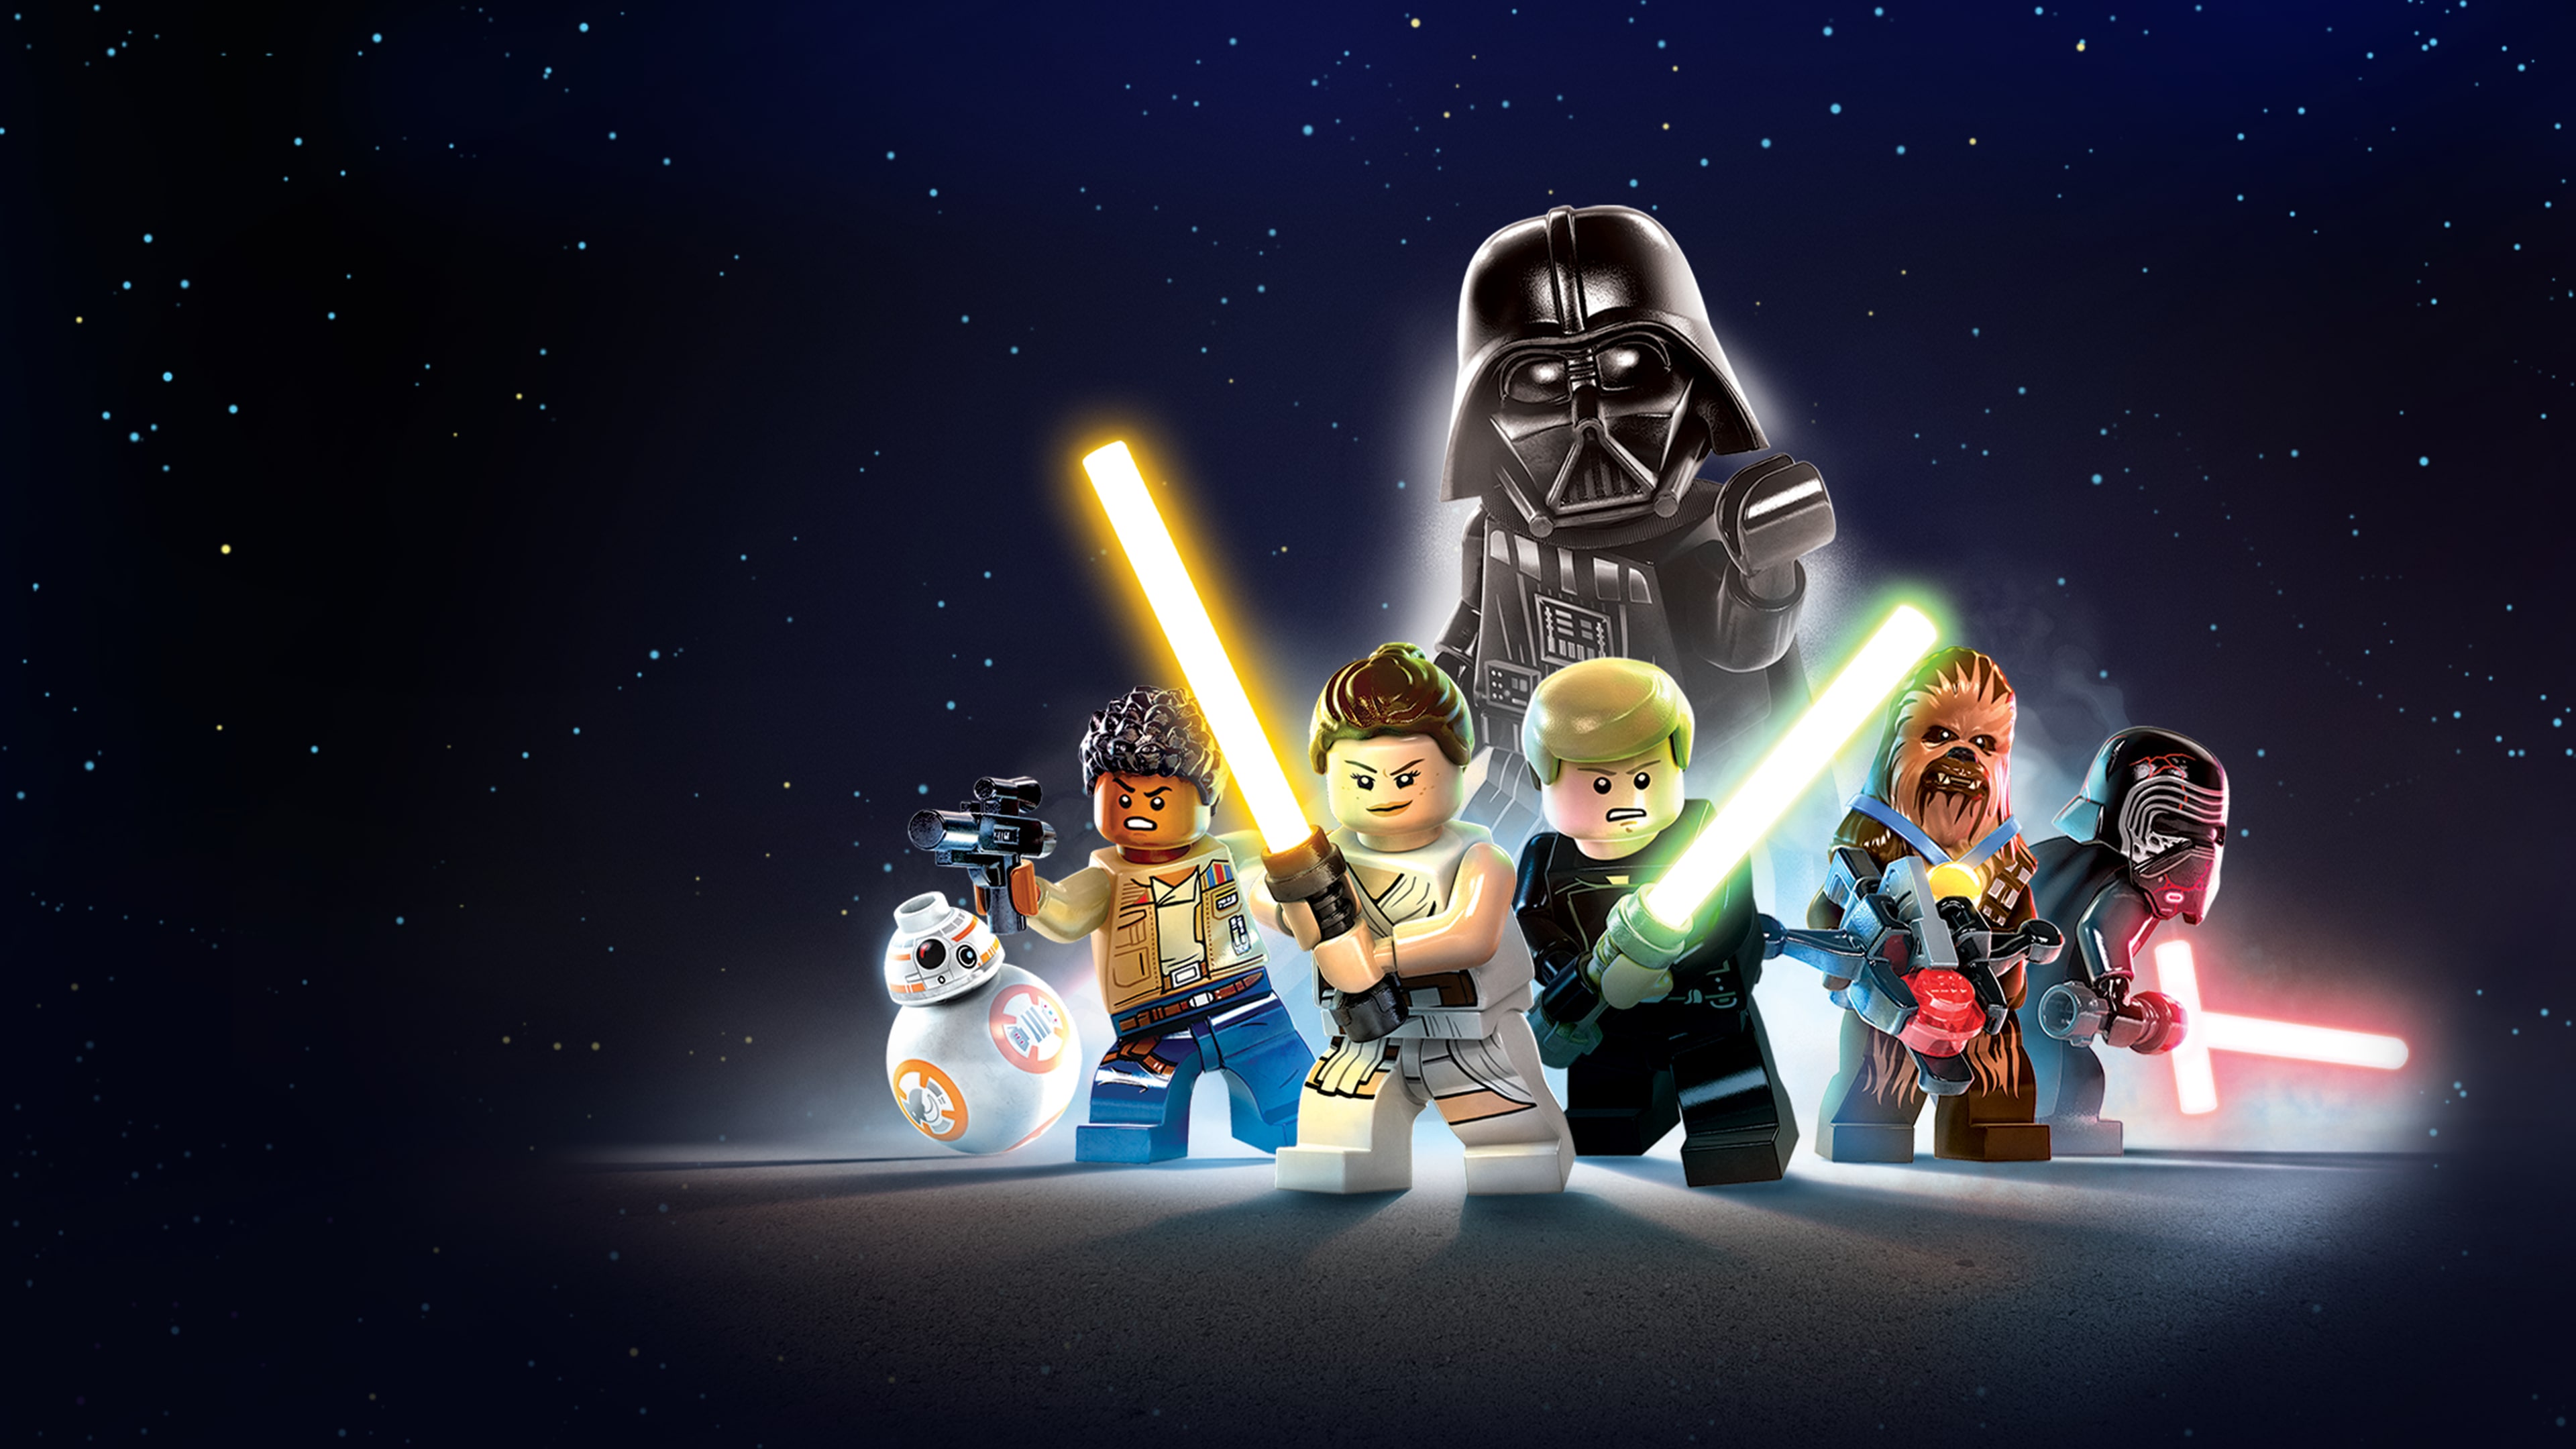 LEGO® Звездные Войны™: Скайуокер. Сага PS4 & PS5